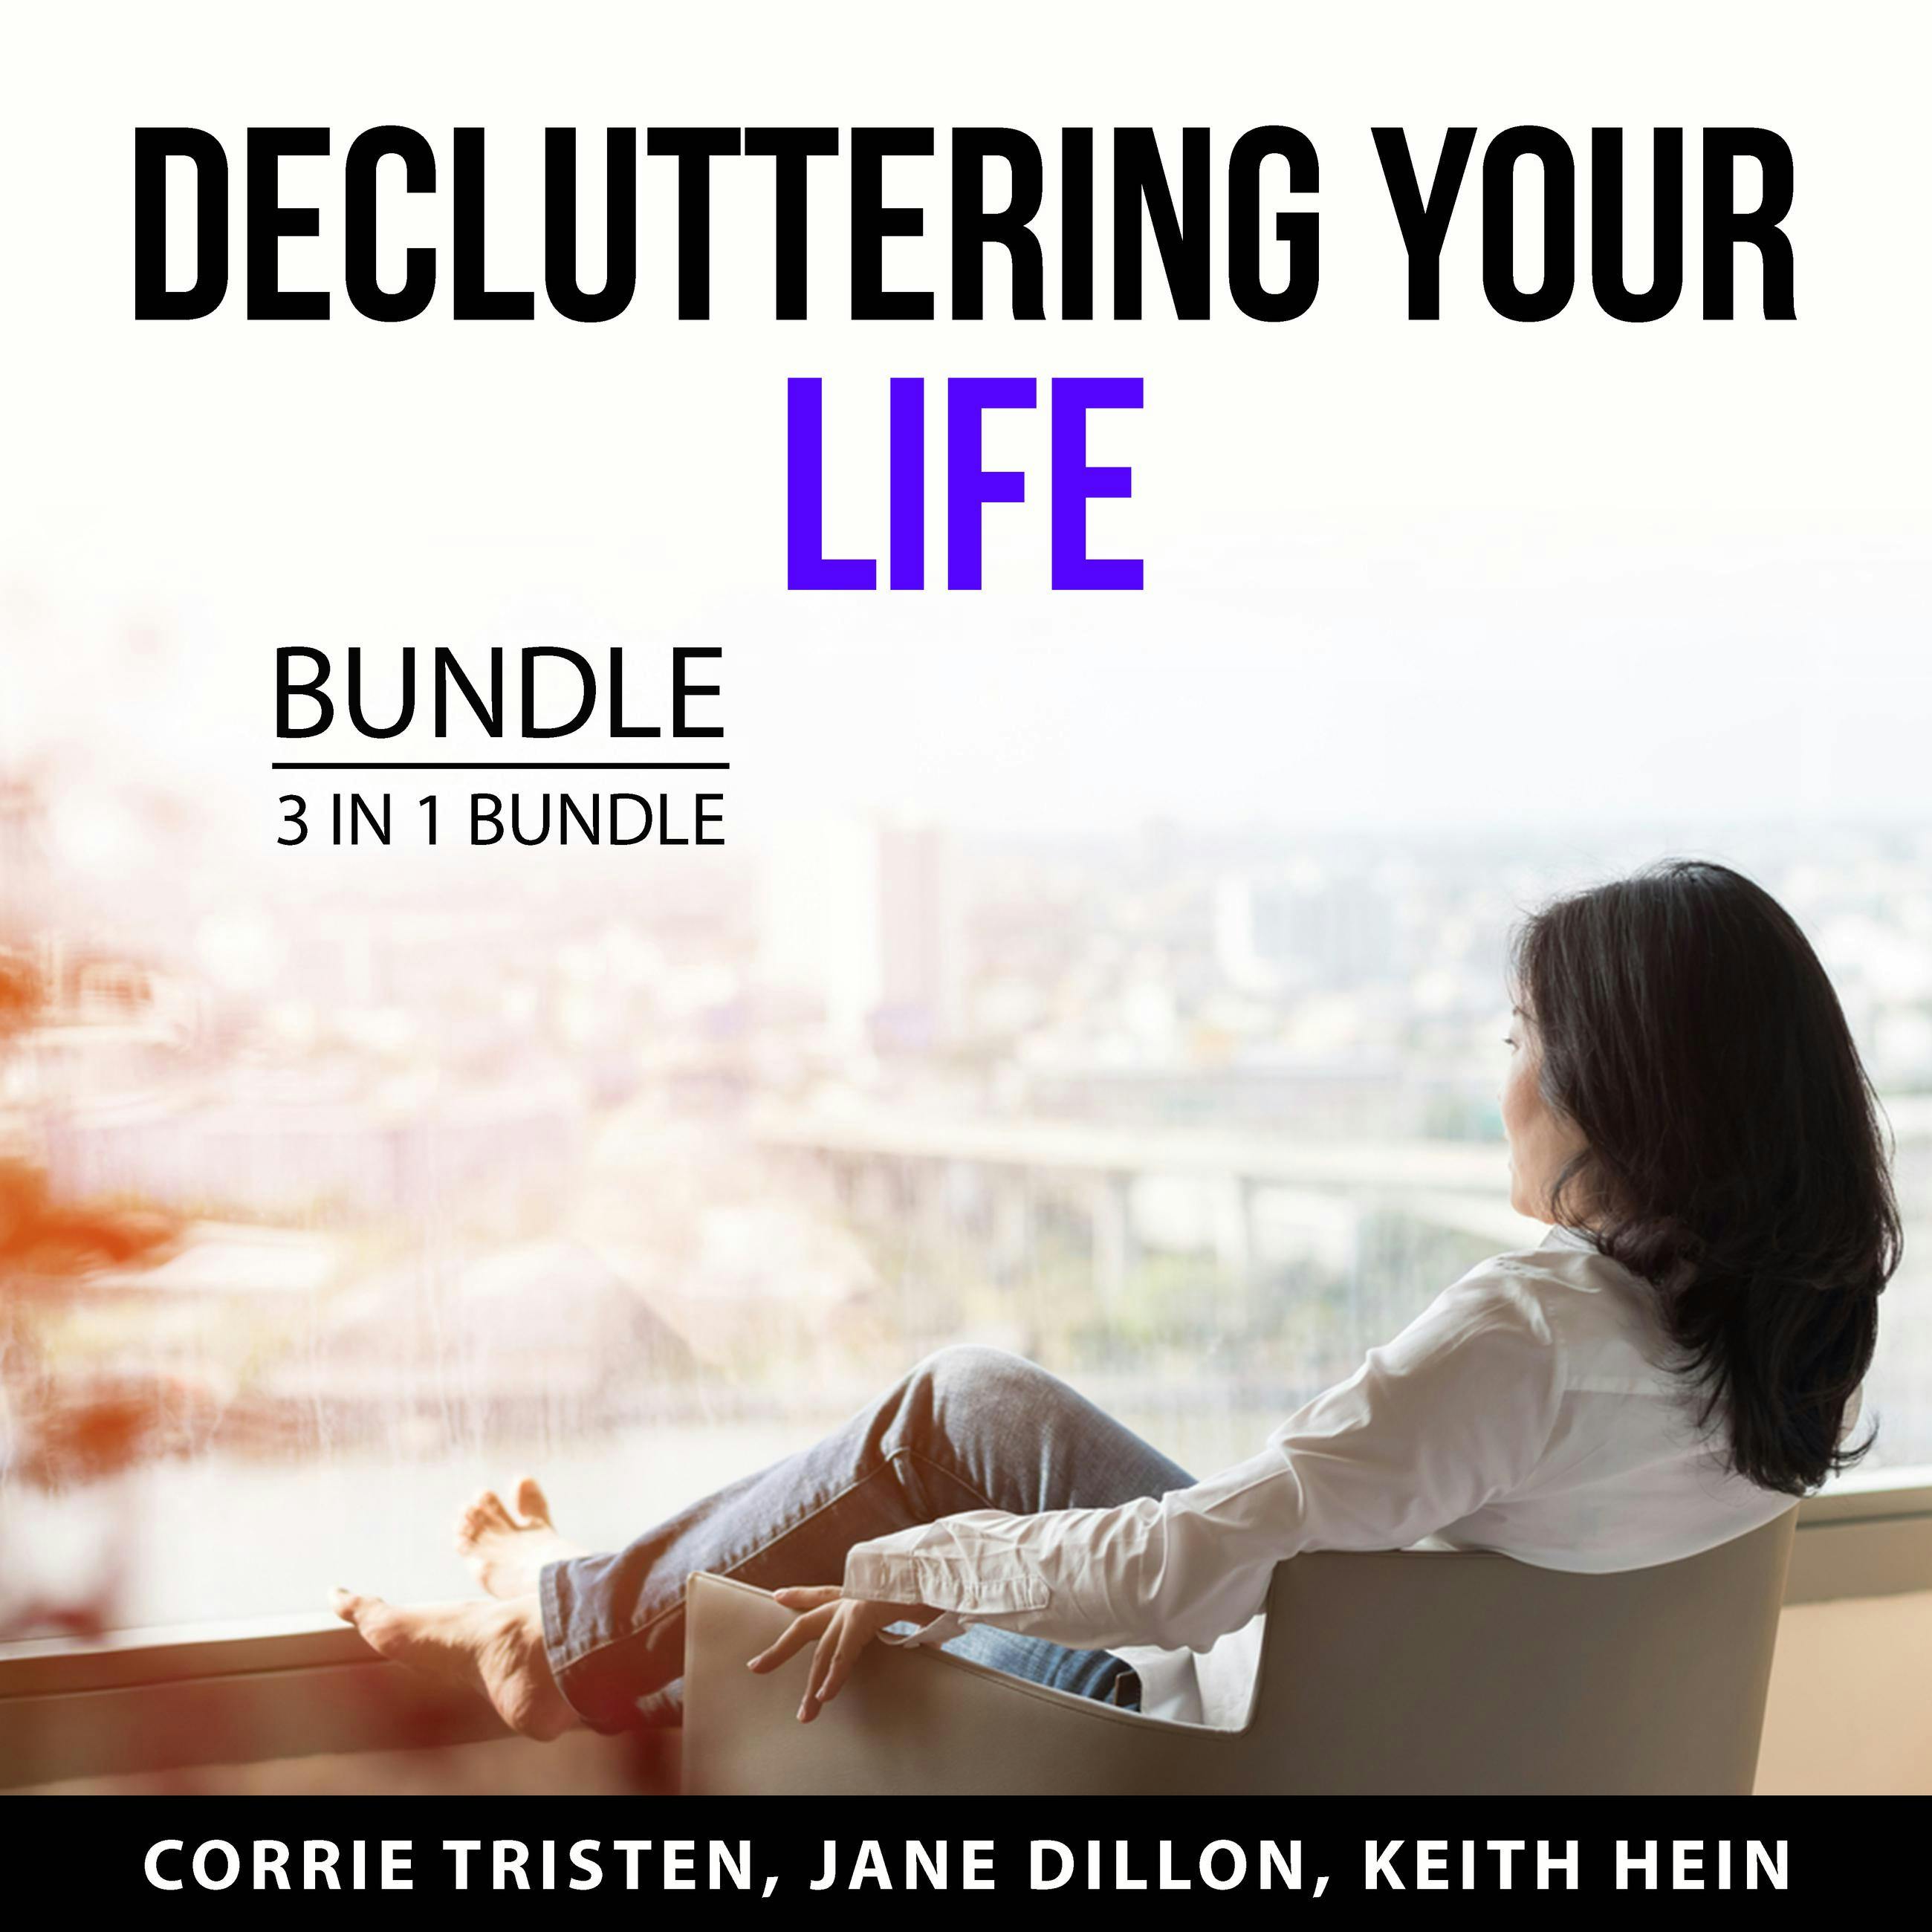 Decluttering Your Life Bundle, 3 in 1 Bundle: Declutter and Organize Your Life, Declutter and Organize Your Home, and Declutter Your Mind - Keith Hein, Corrie Tristen, Jane Dillon